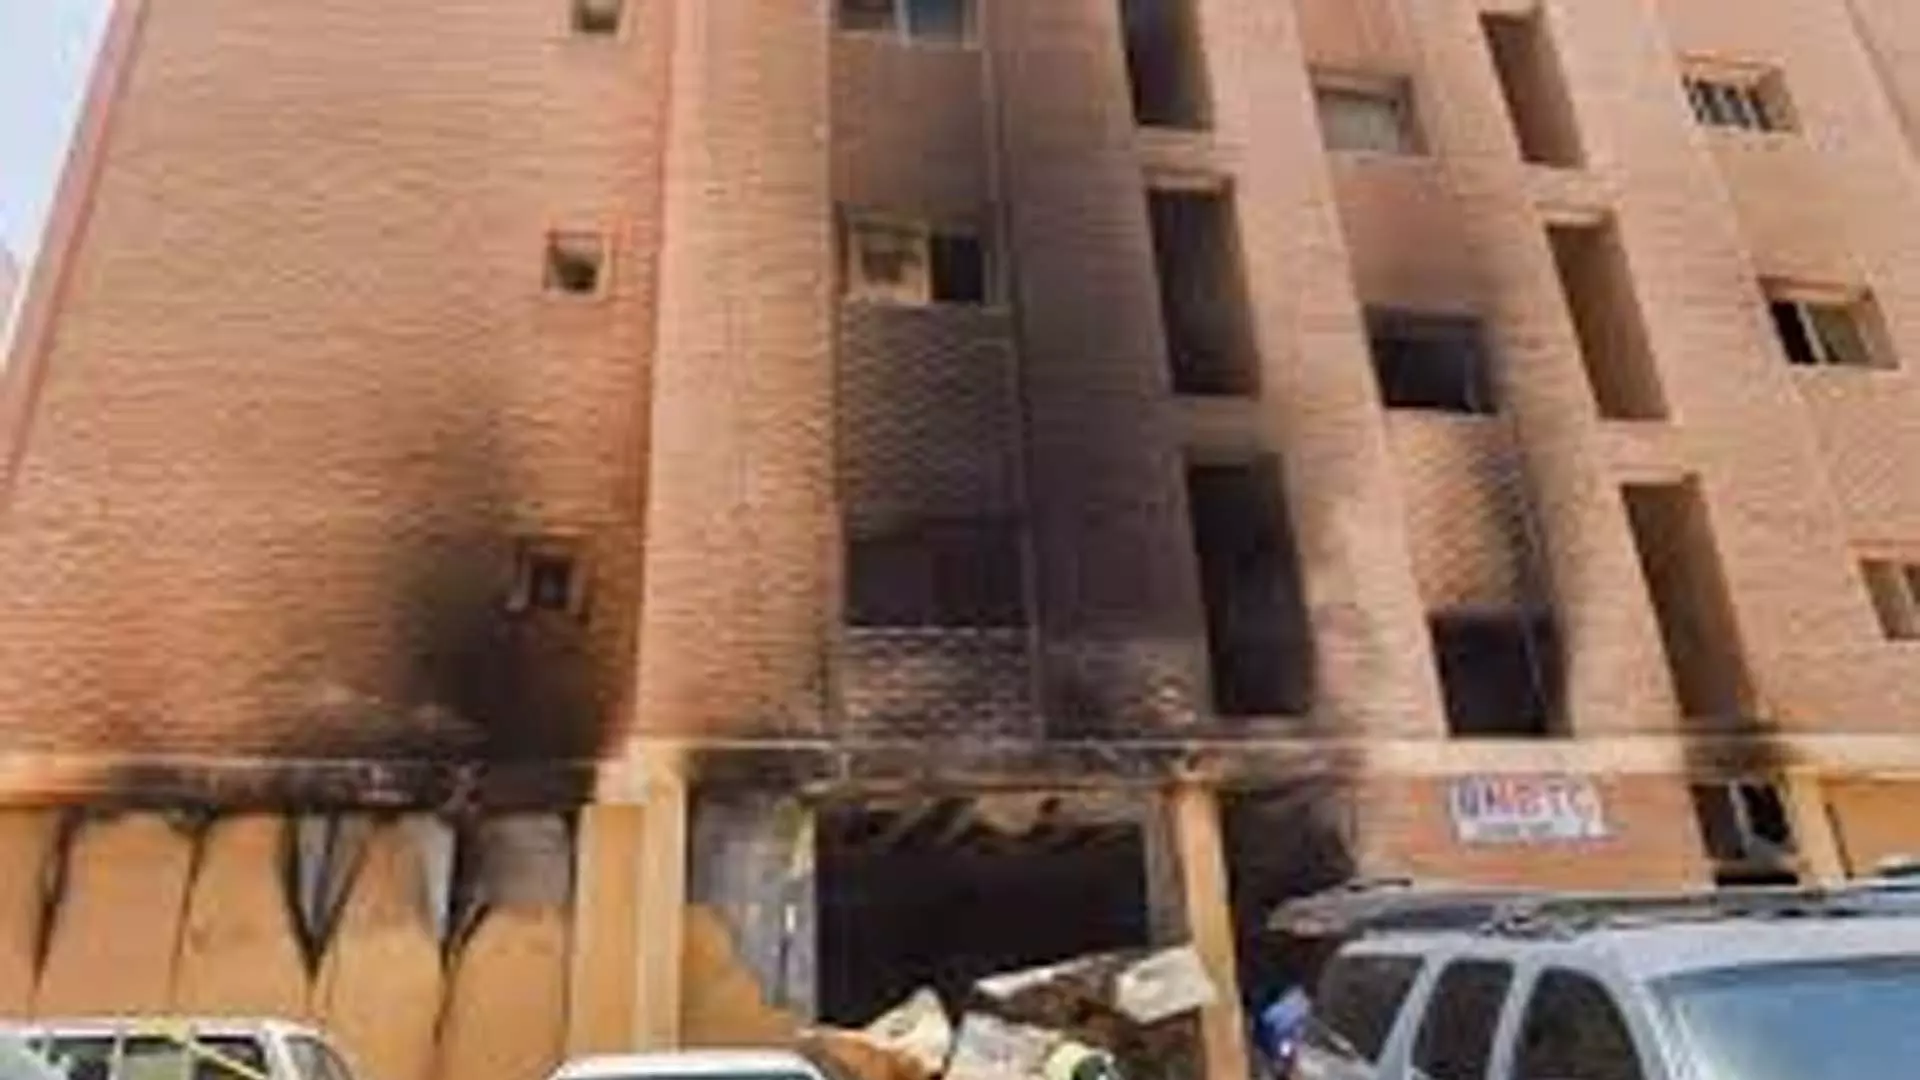 Tamil Nadu News:  कुवैत में हुई दुखद आग के बाद तमिलनाडु सरकार ने त्वरित कार्रवाई की